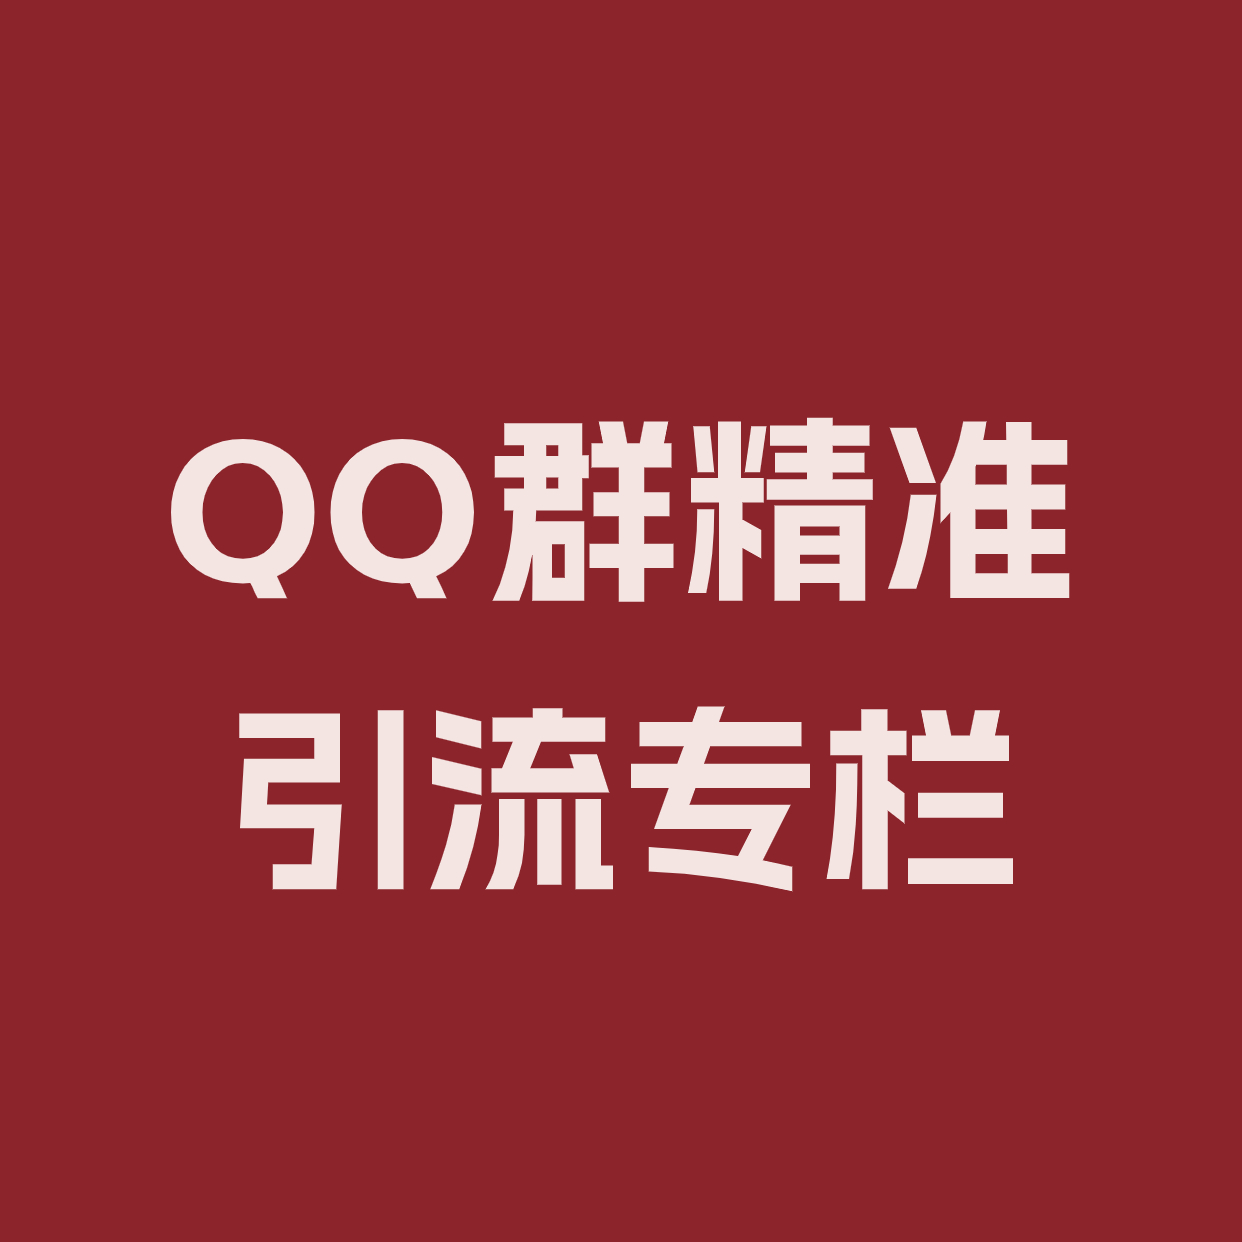 QQ群精准引流专栏 (1)